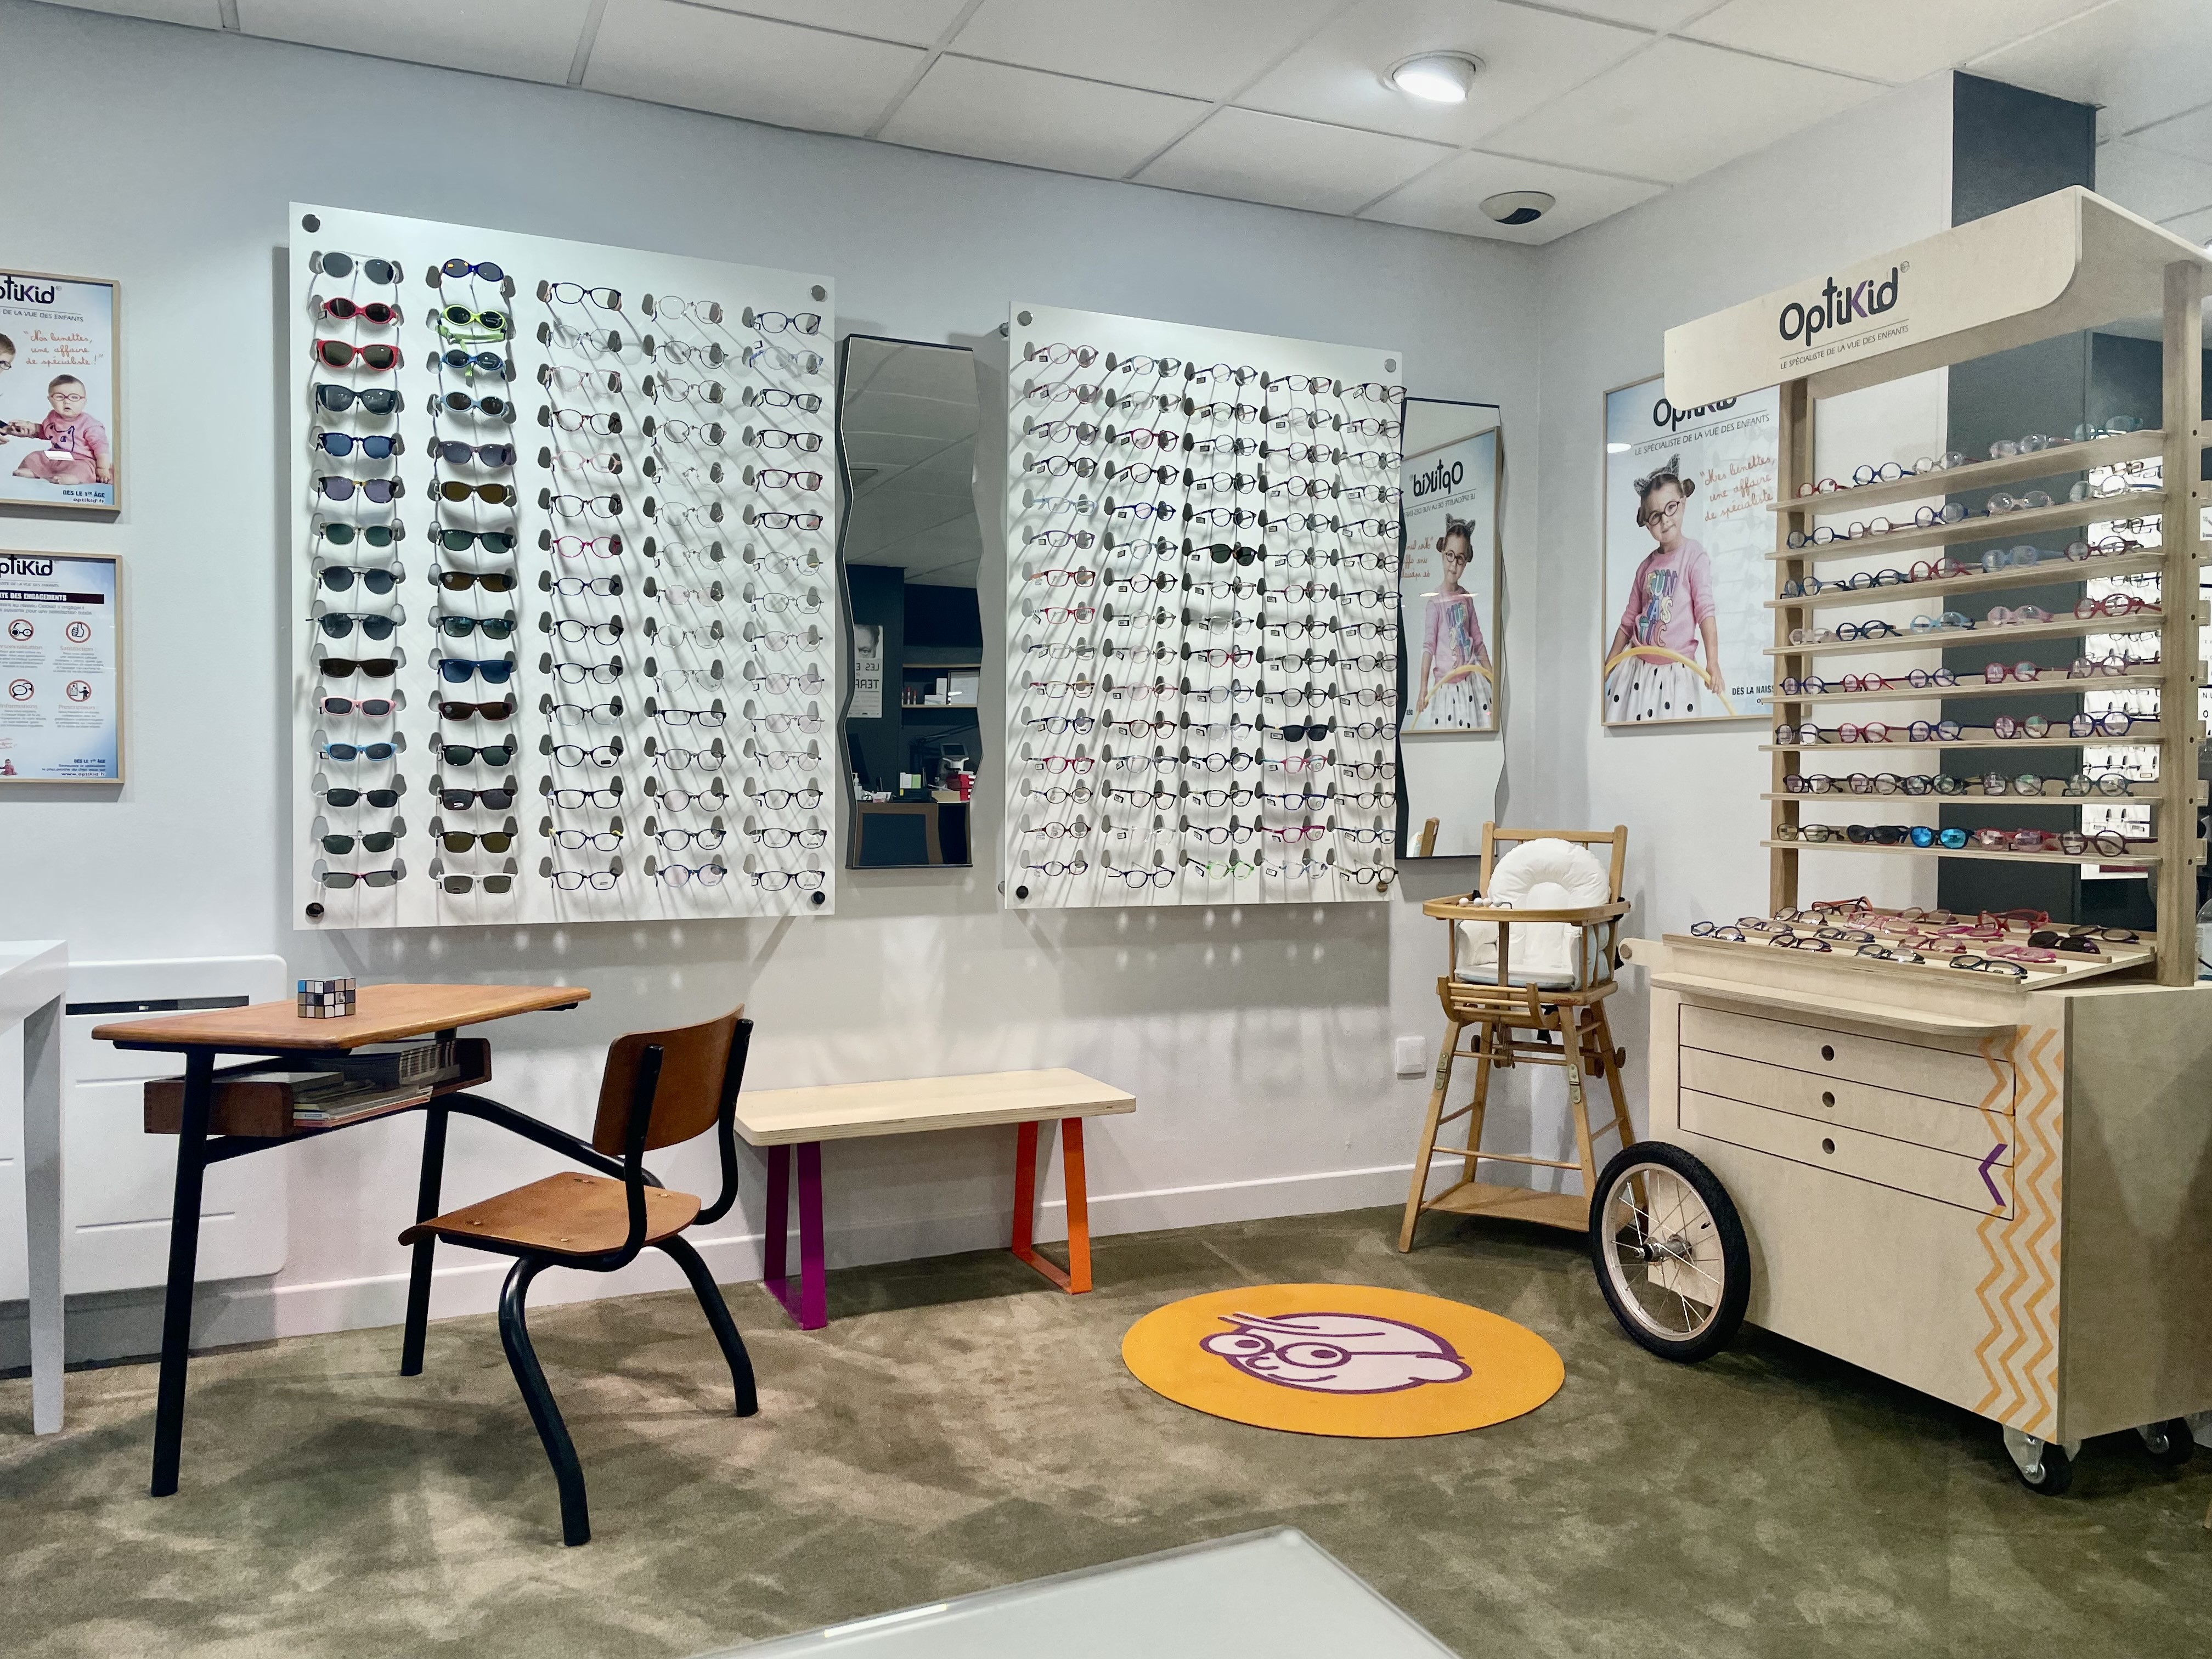 MODERNE OPTIQUE spécialiste de l'optique et des lunettes pour enfants à MARCQ EN BAROEUL - Optikid